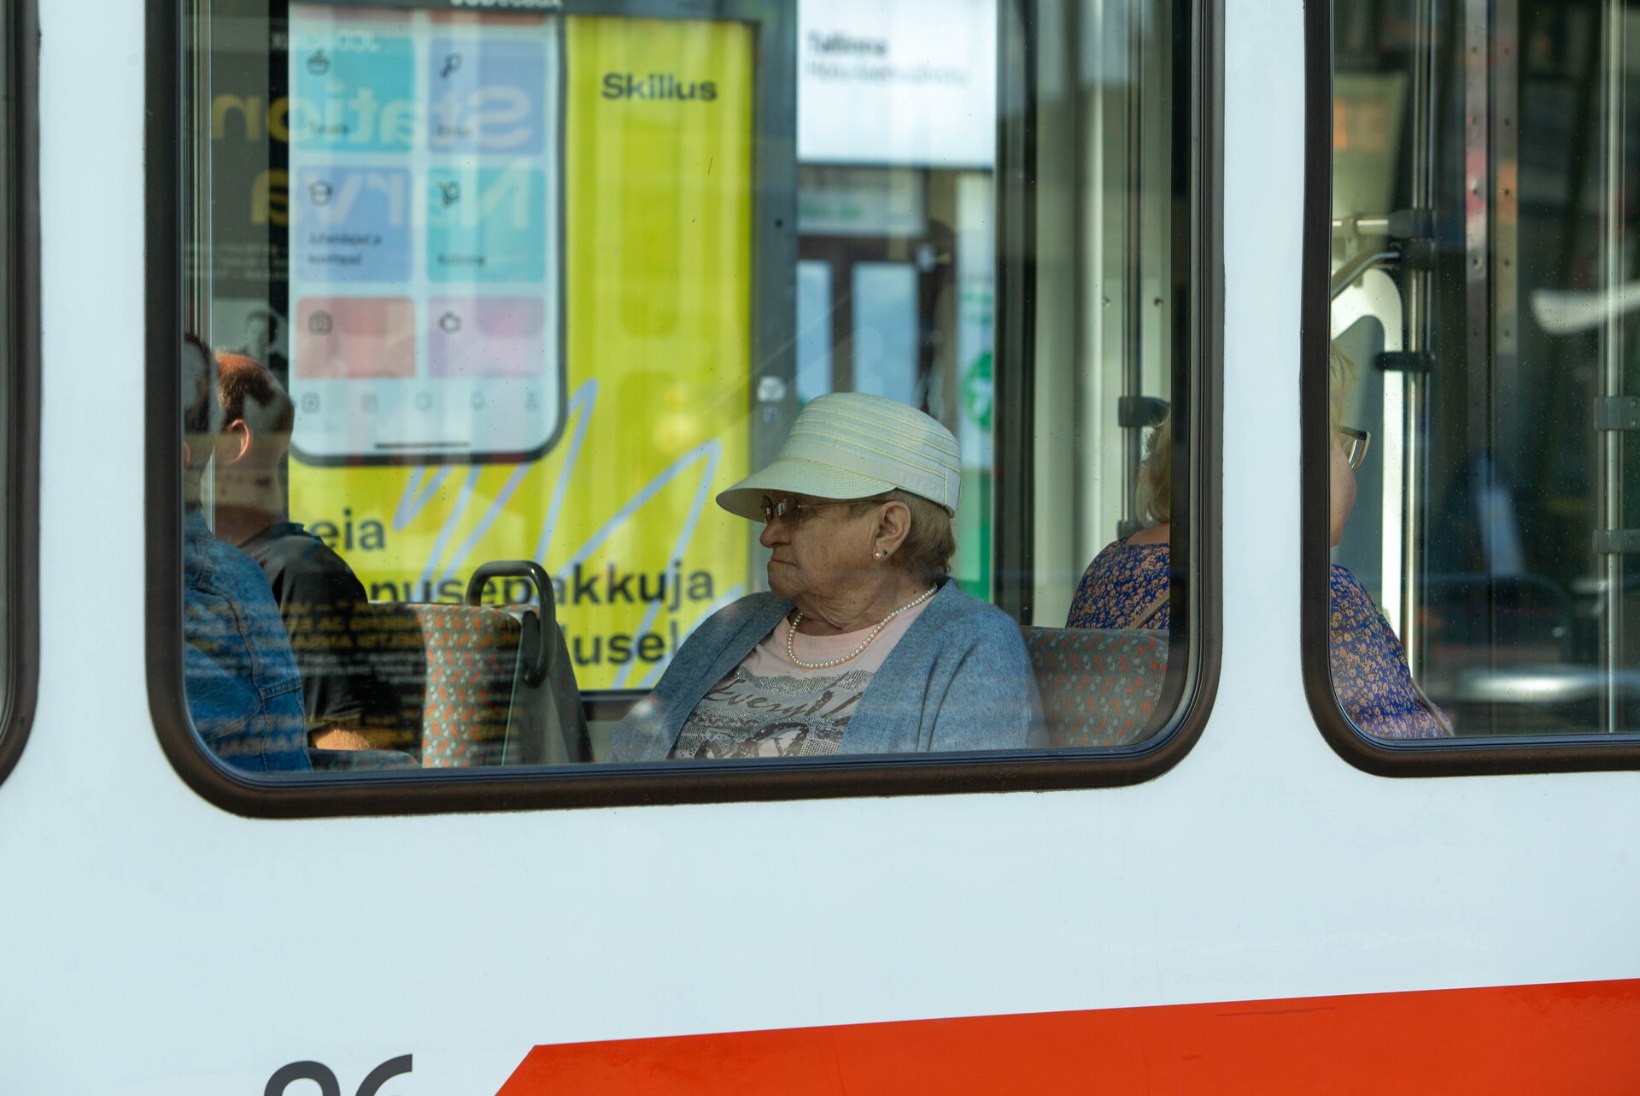 GALERII | Pooled ühistranspordiga sõitjad ei kanna maski